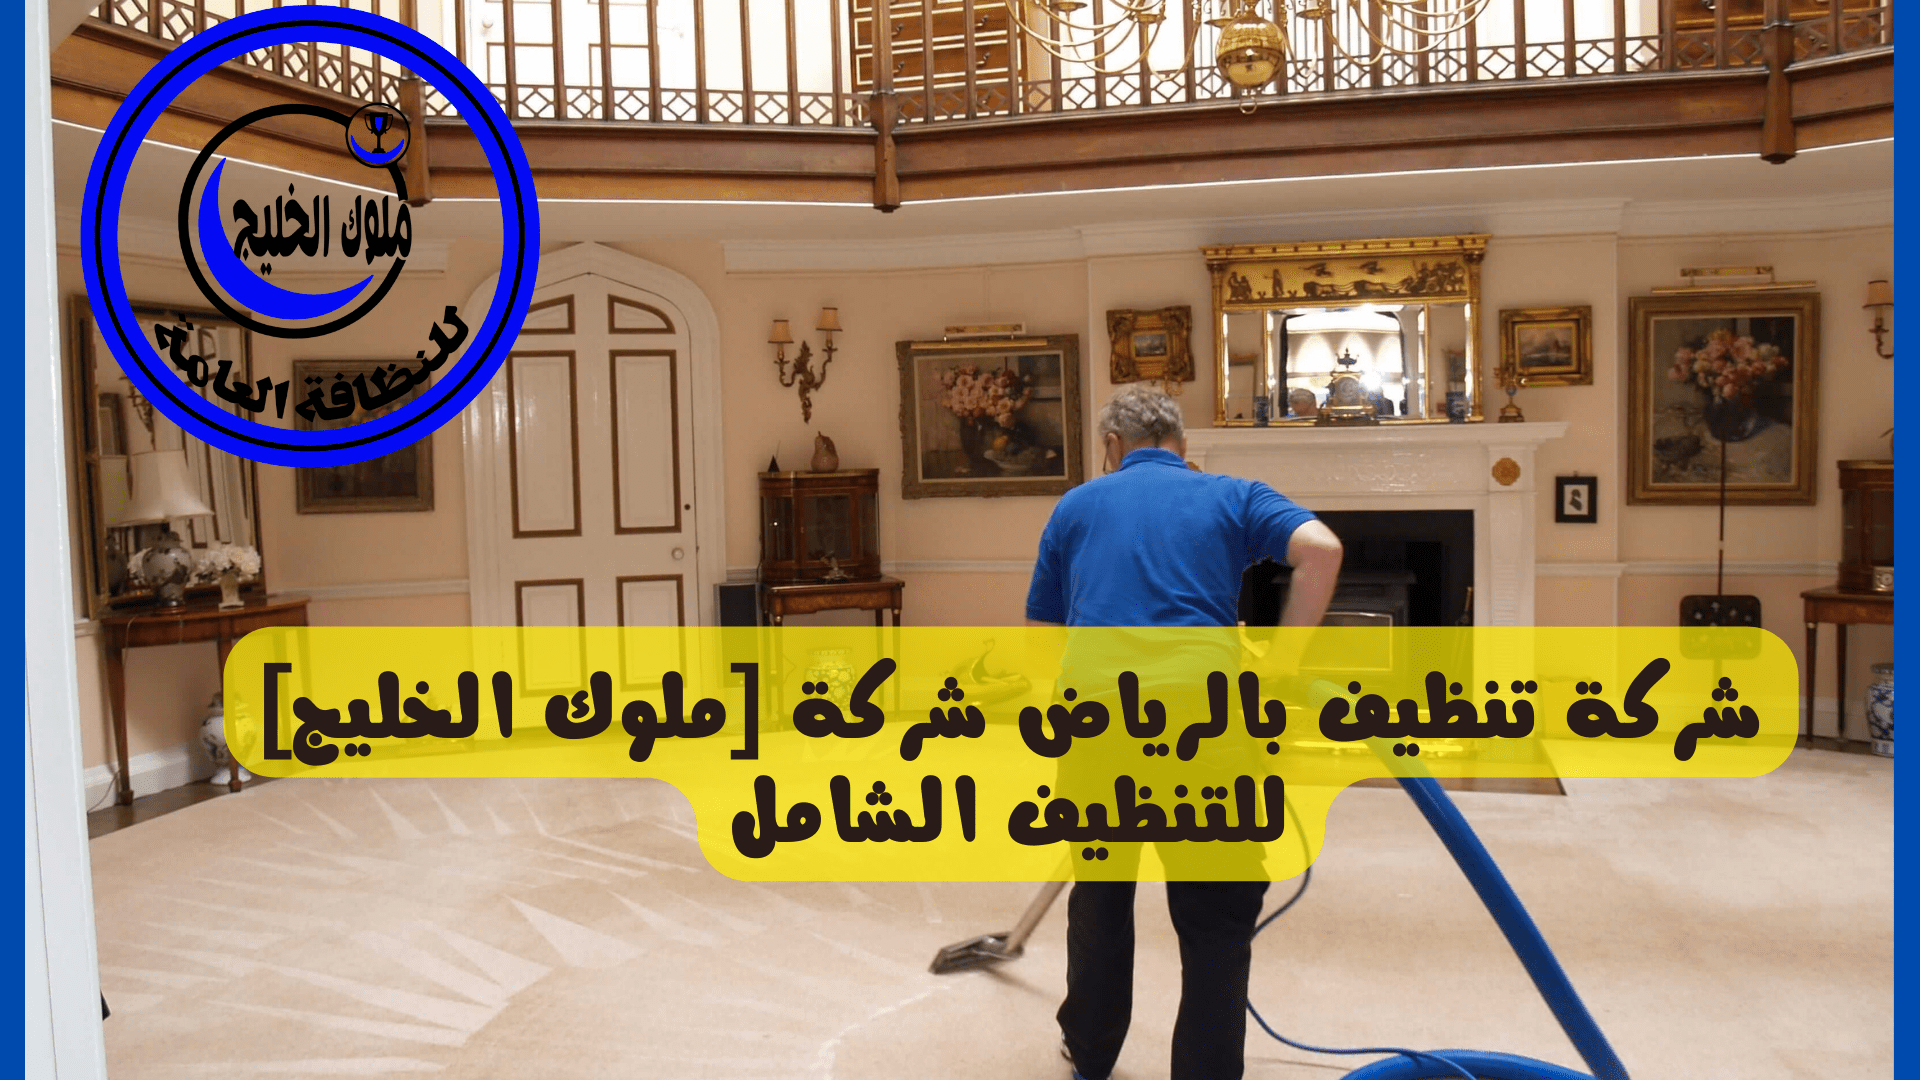 شركة تنظيف بالرياض شركة ملوك الخليج للتنظيف الشامل